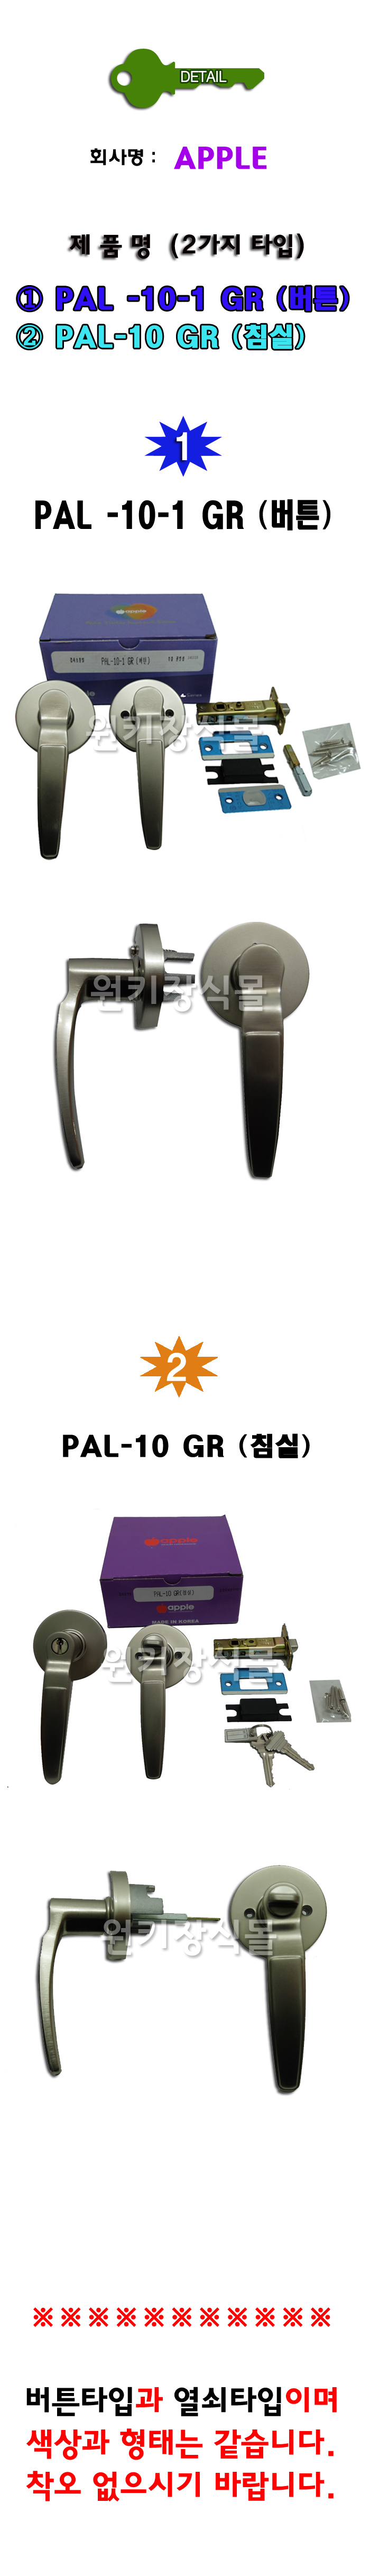 PAL10 (ư,ħ)-.jpg